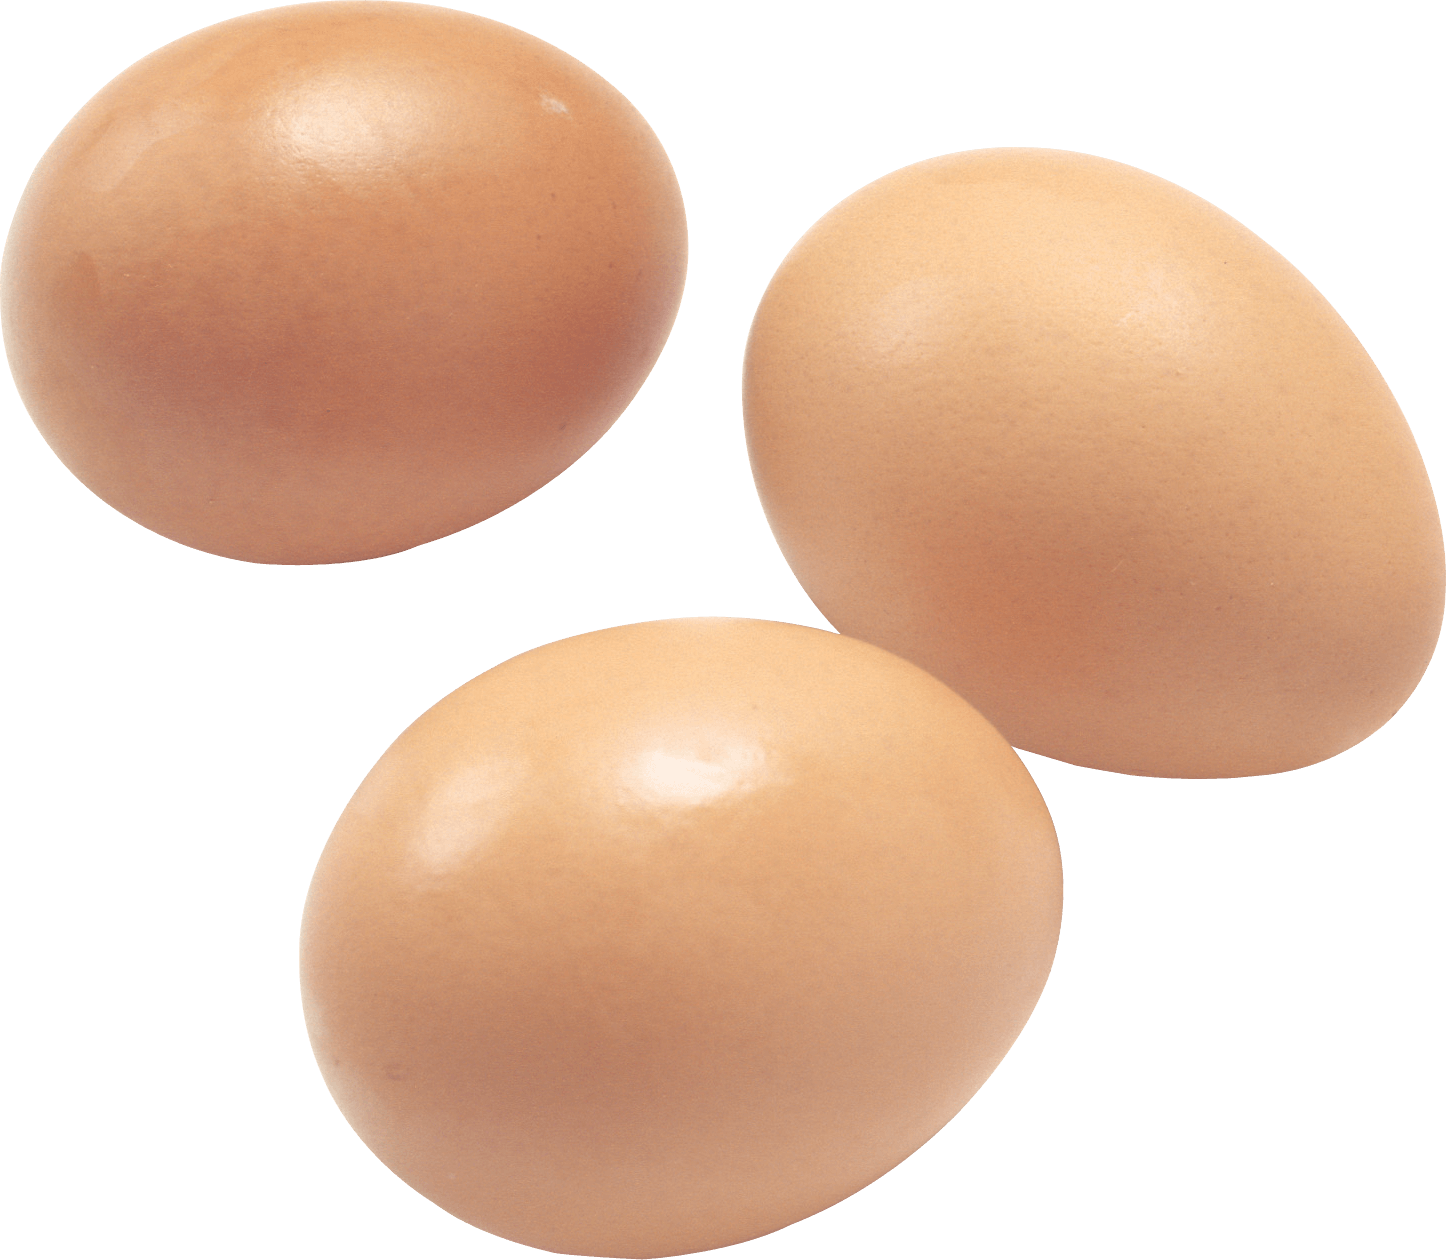 Brown Egg Transparent Image